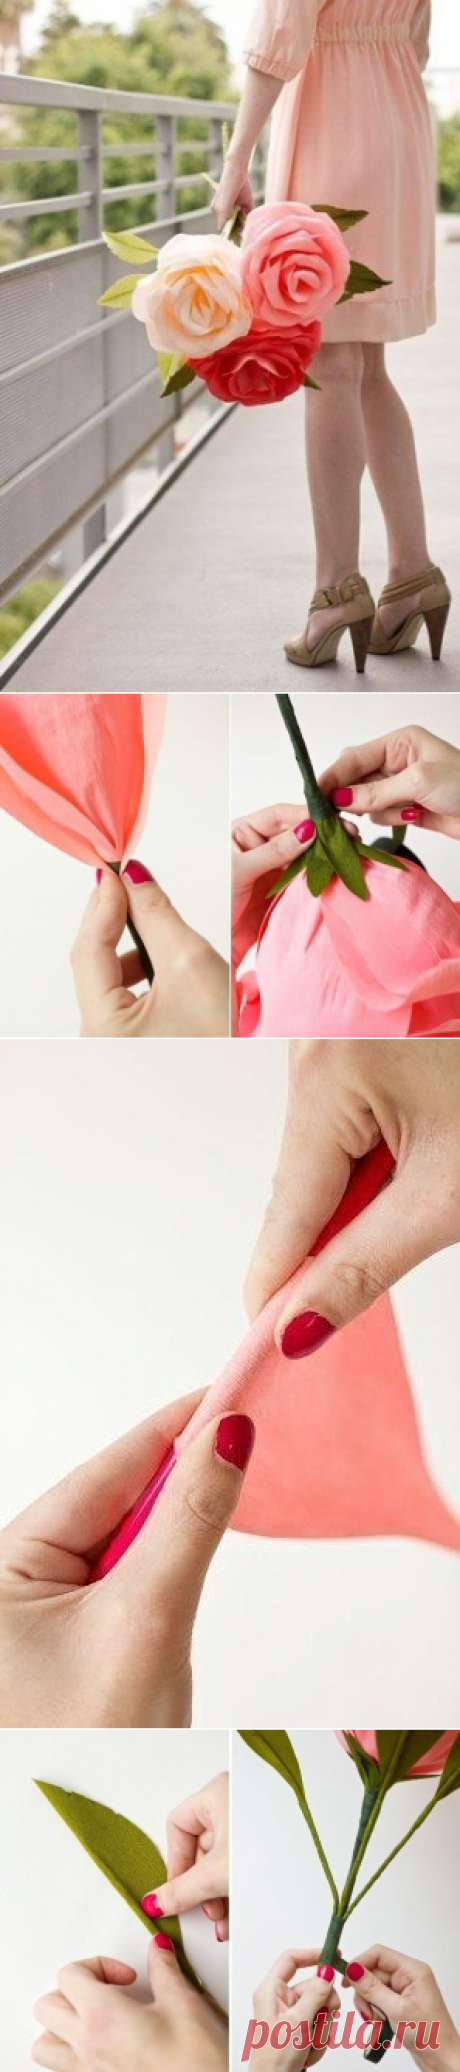 Гигантская роза из гофрированной бумаги, проволоки и тейп-ленты — Сделай сам, идеи для творчества - DIY Ideas